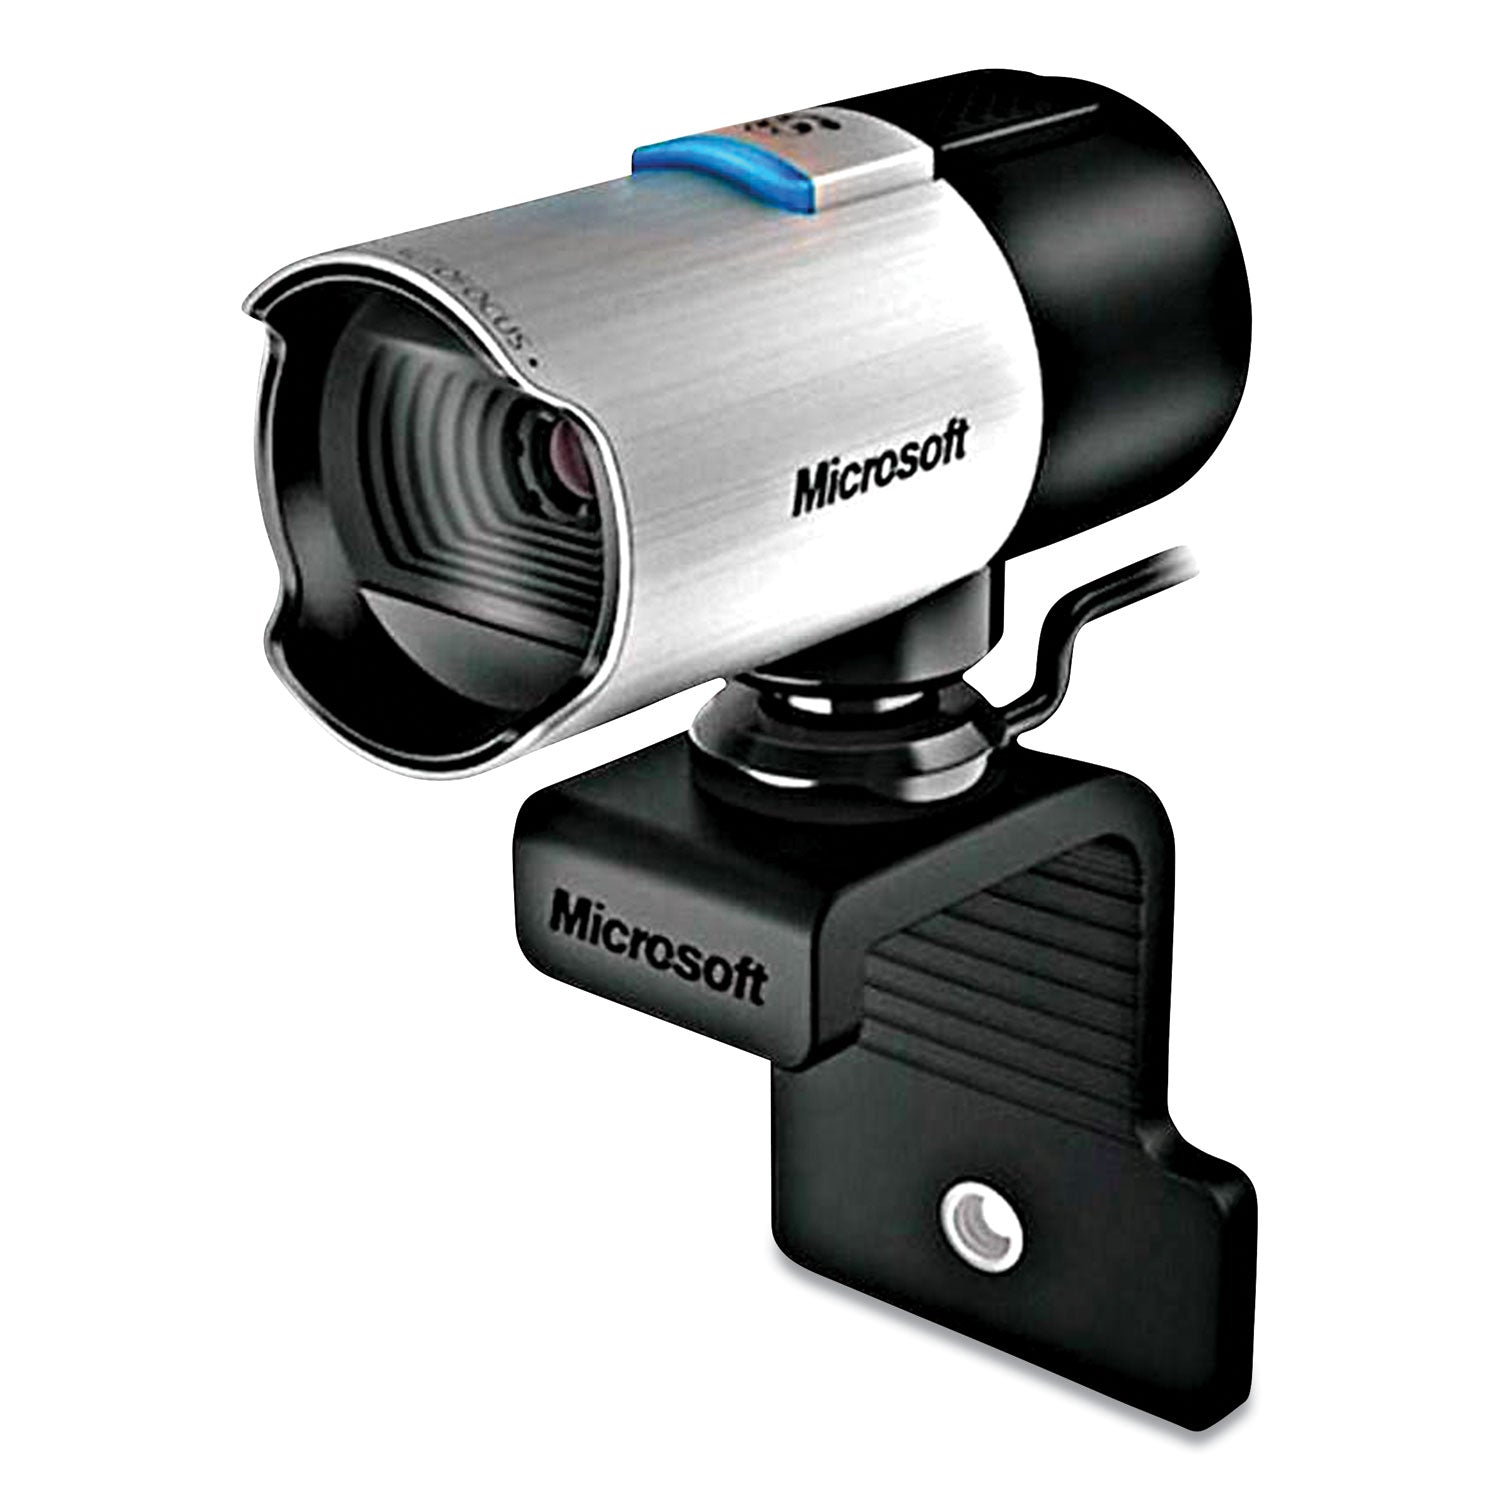 lifecam-studio-2-universal-webcam-1920-pixels-x-1080-pixels-2-mpixels-black_msfq2f00013 - 4